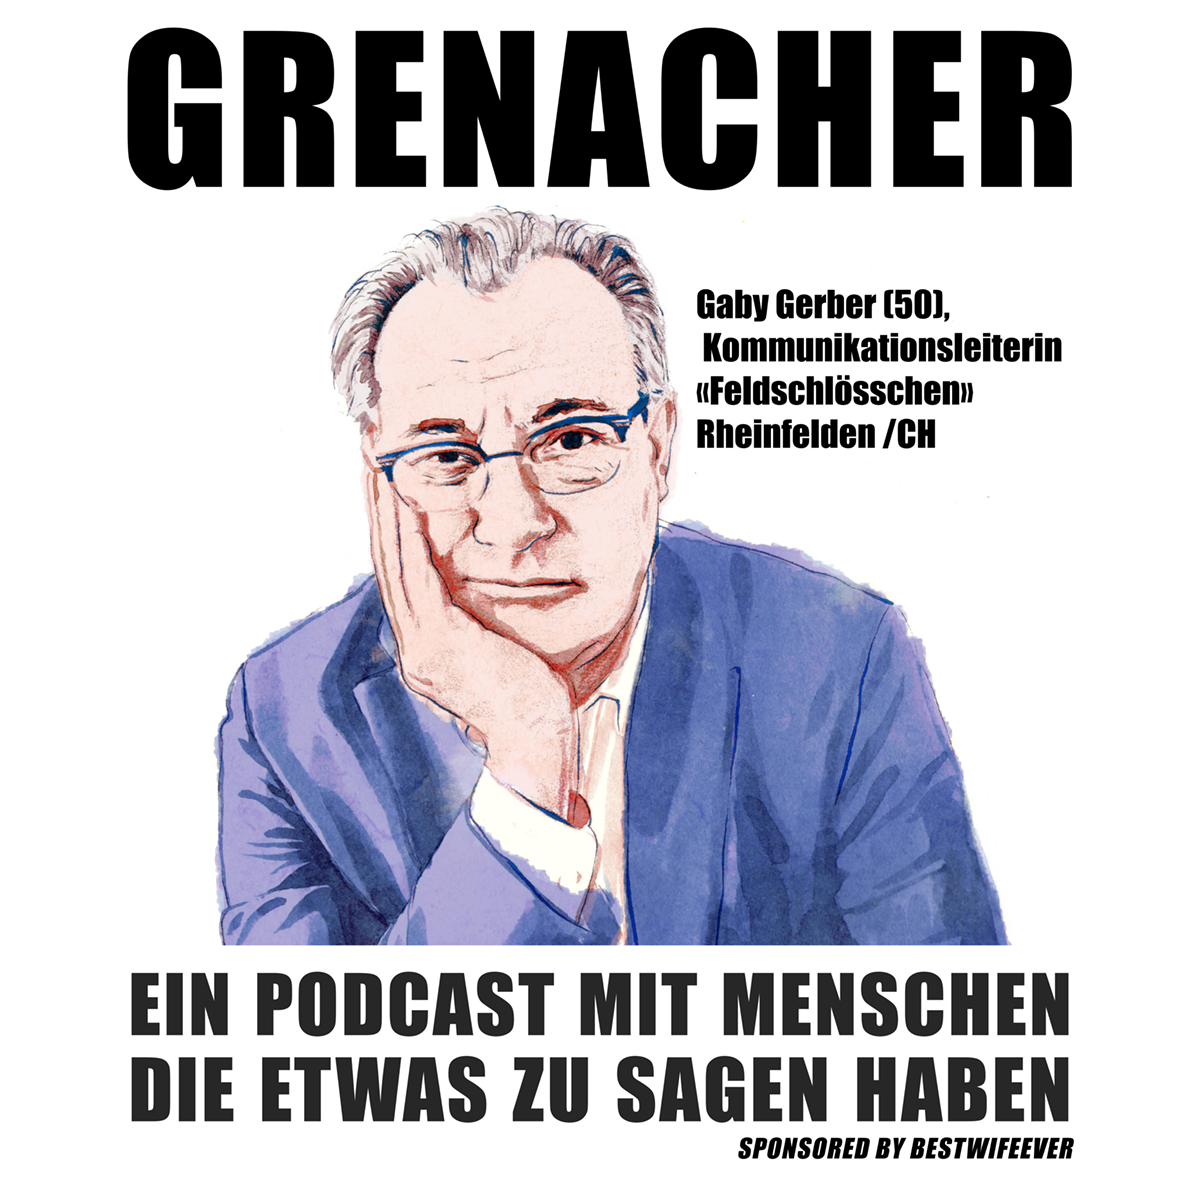 GRENACHER #6: Hartmut Fricke, Gerontologe & Gemeinderat, Bad Säckingen / D